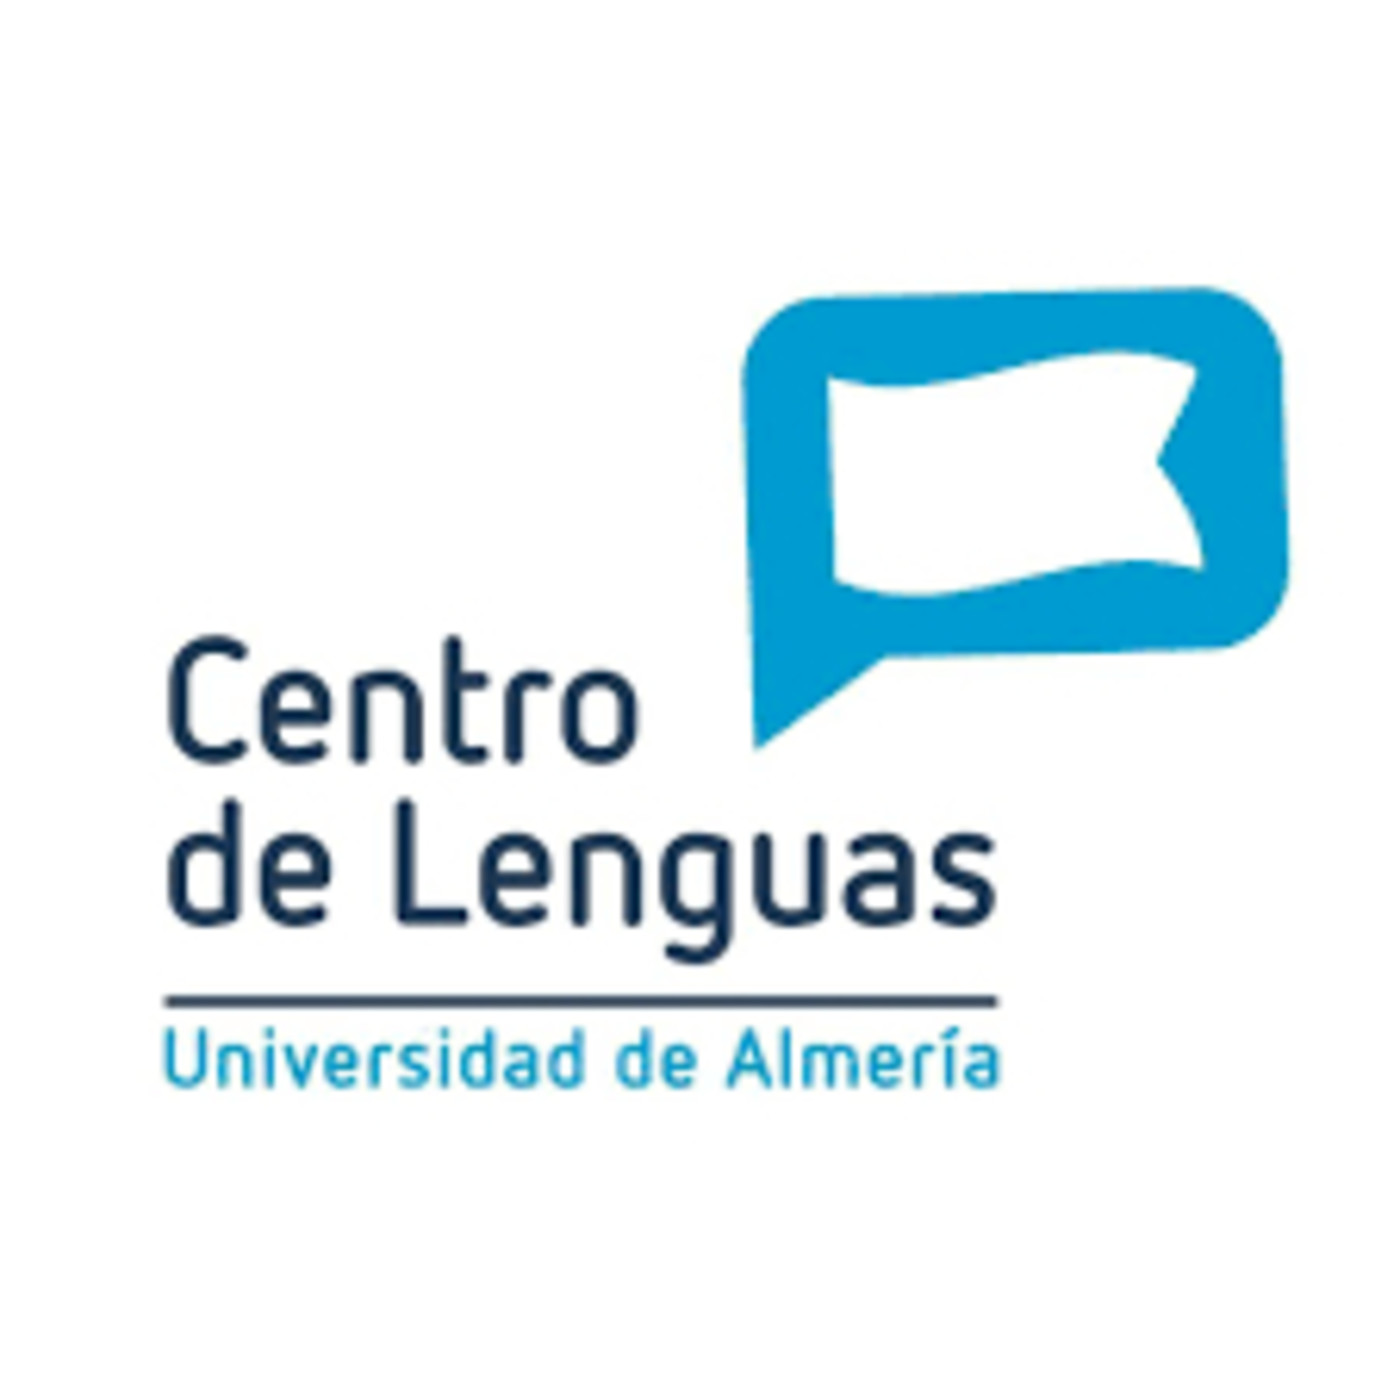 Centro de Lenguas